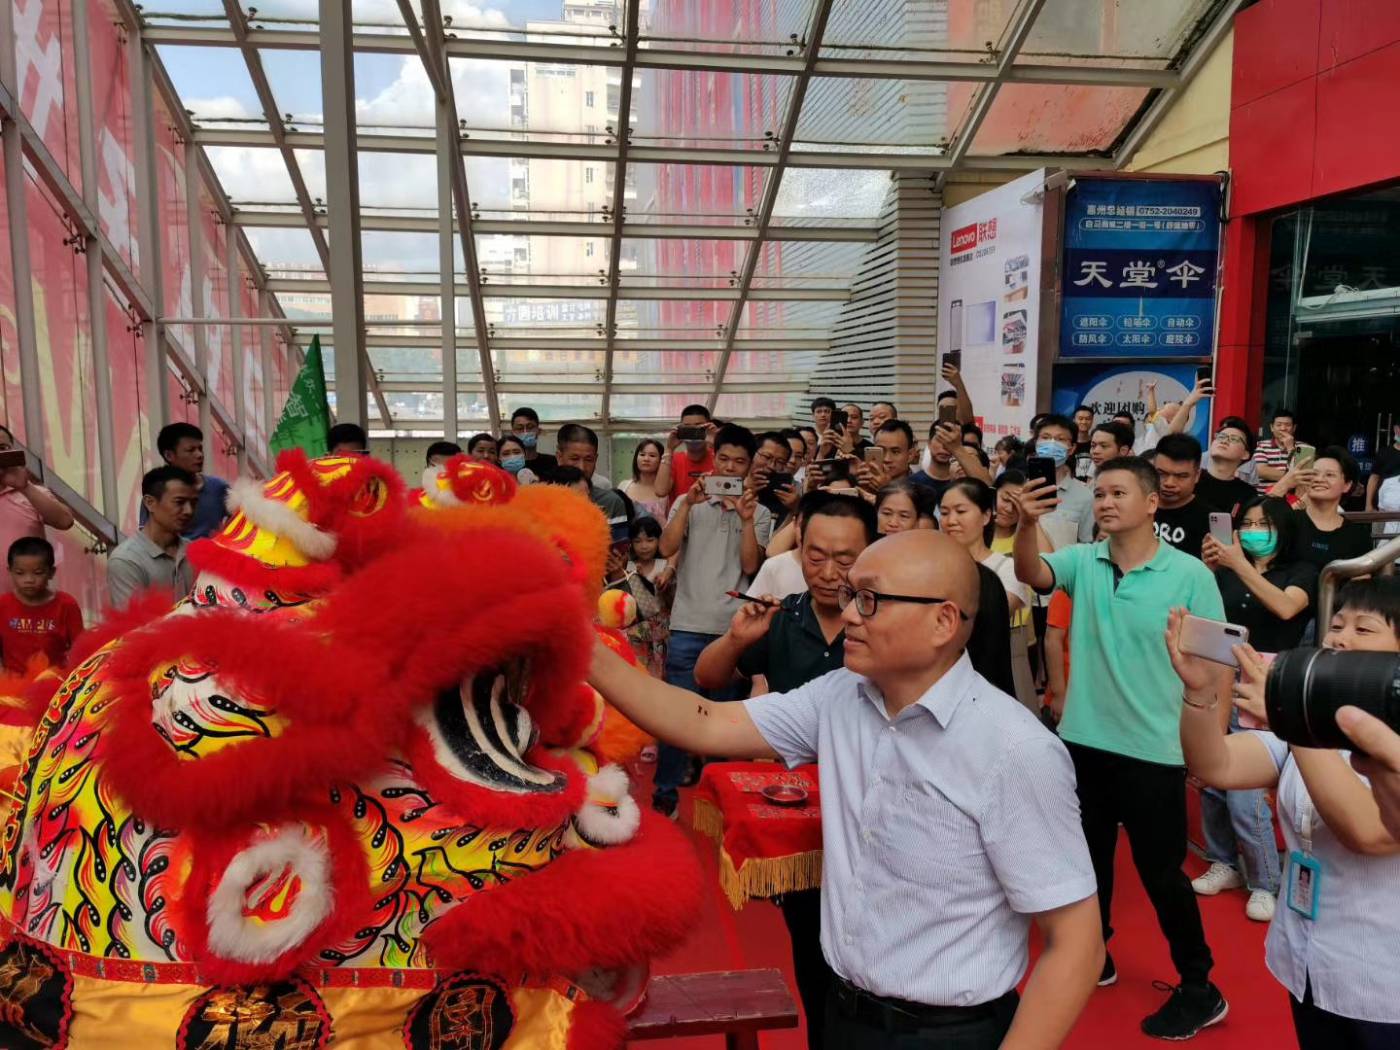 集团物业部李经理和惠州白马商城负责人为舞狮点睛